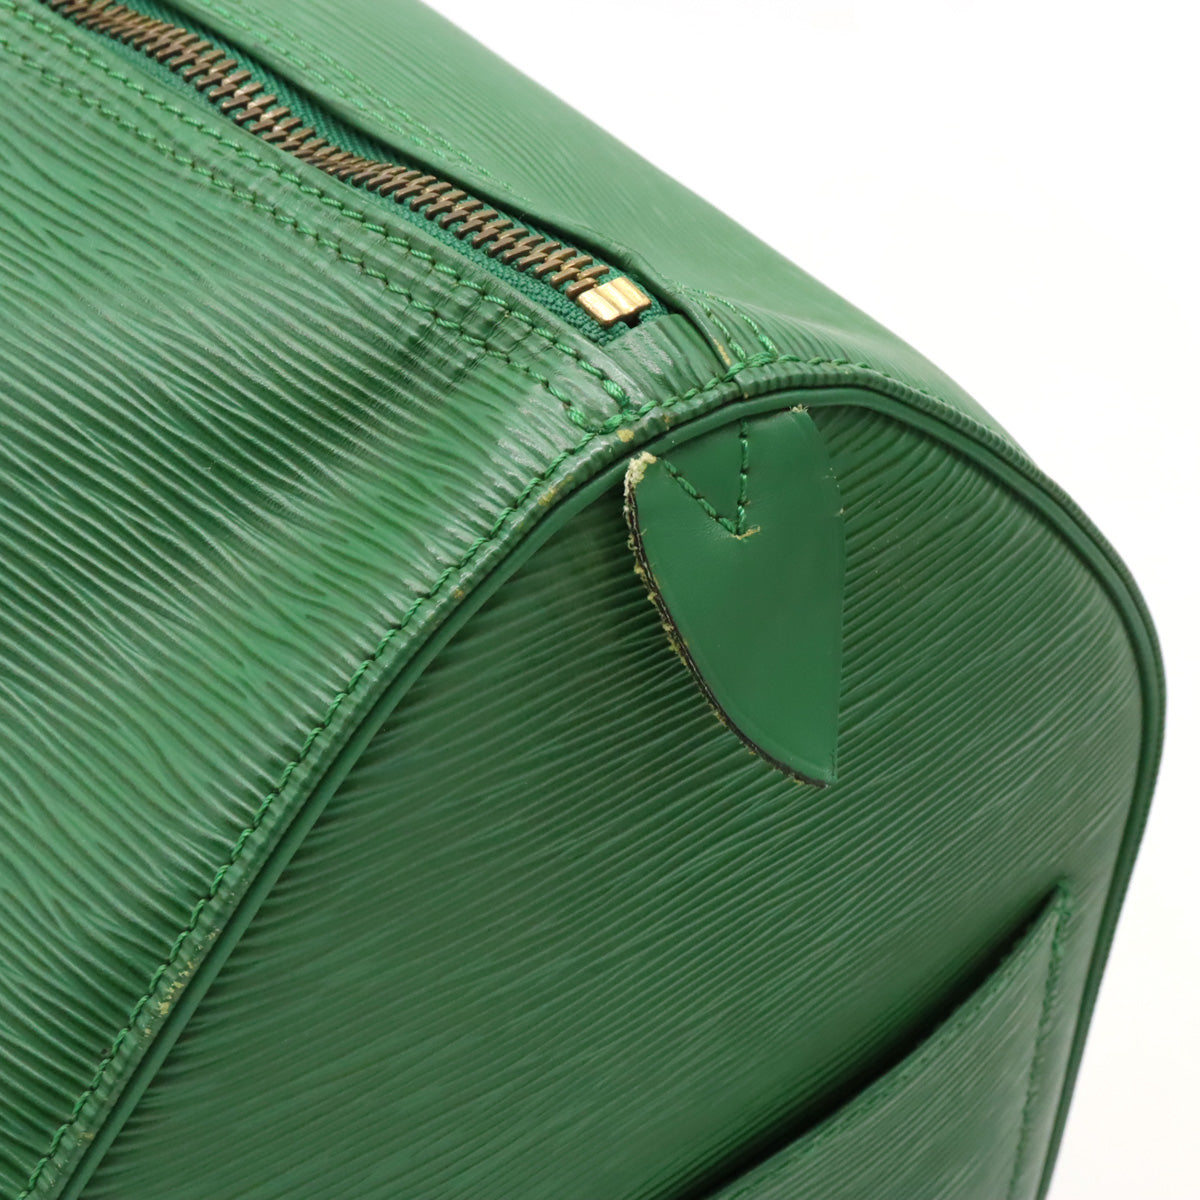 Louis Vuitton Keepall 50 Epi Green